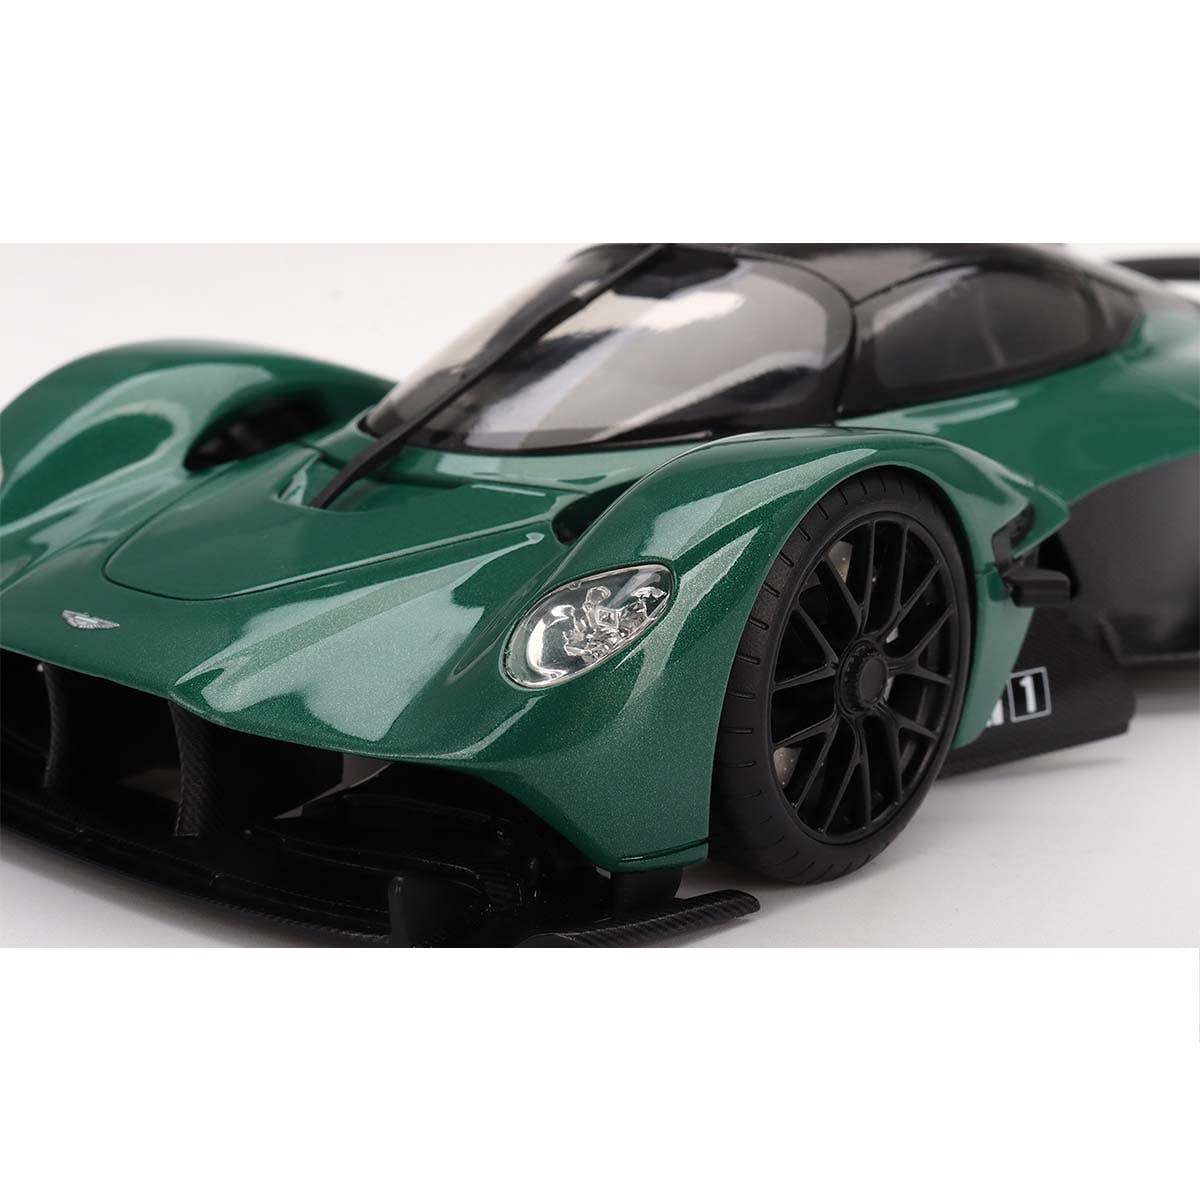 Aston Martin Valkyrie  Aston Martin Racing Green - 1:18 Scale Resin Model Car